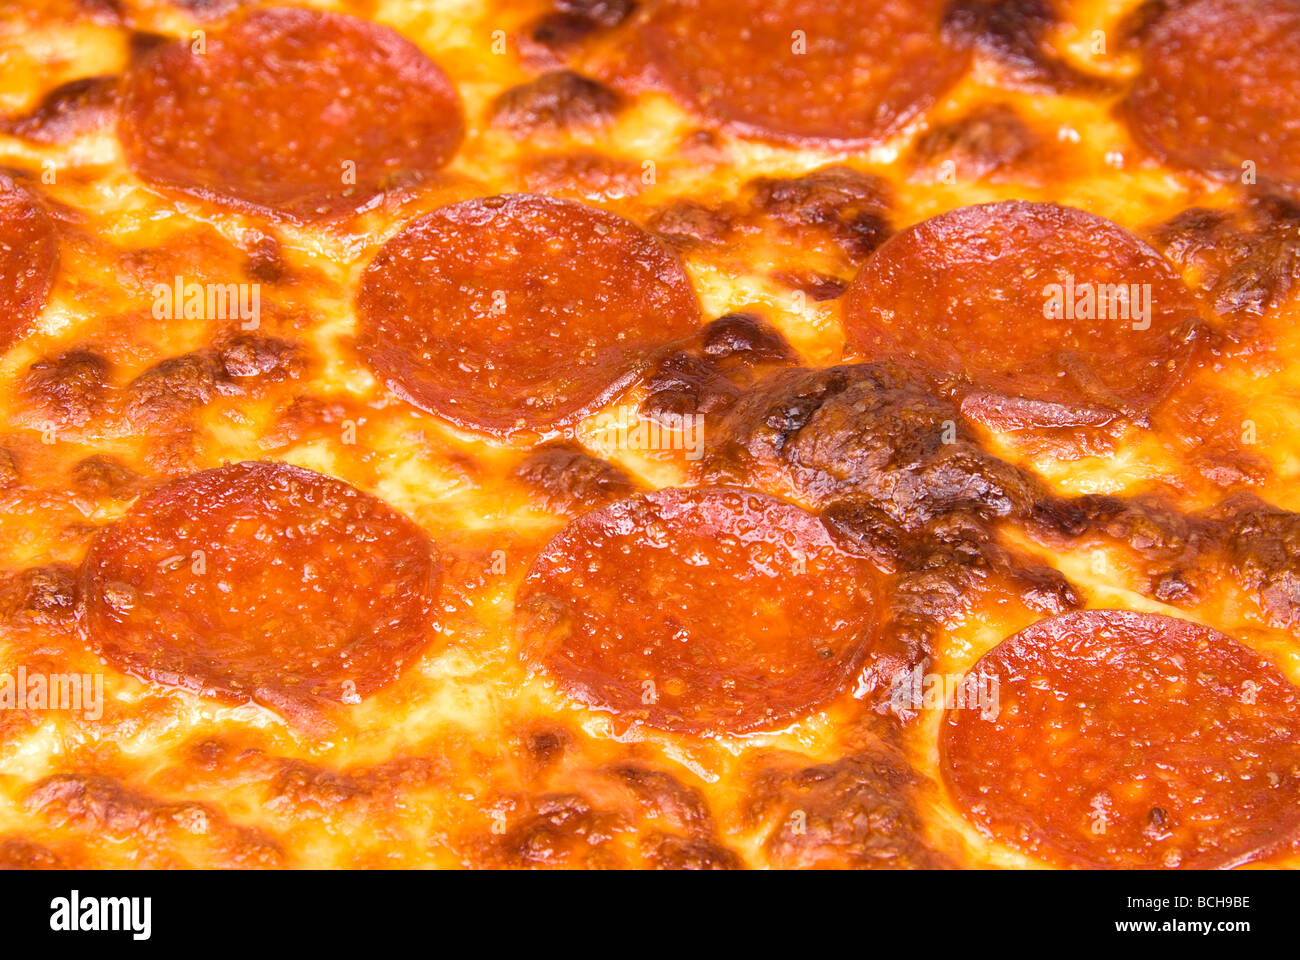 Eine Nahaufnahme von einem Peperoni-Pizza mit Mozzarella und Cheddar Käse Stockfoto